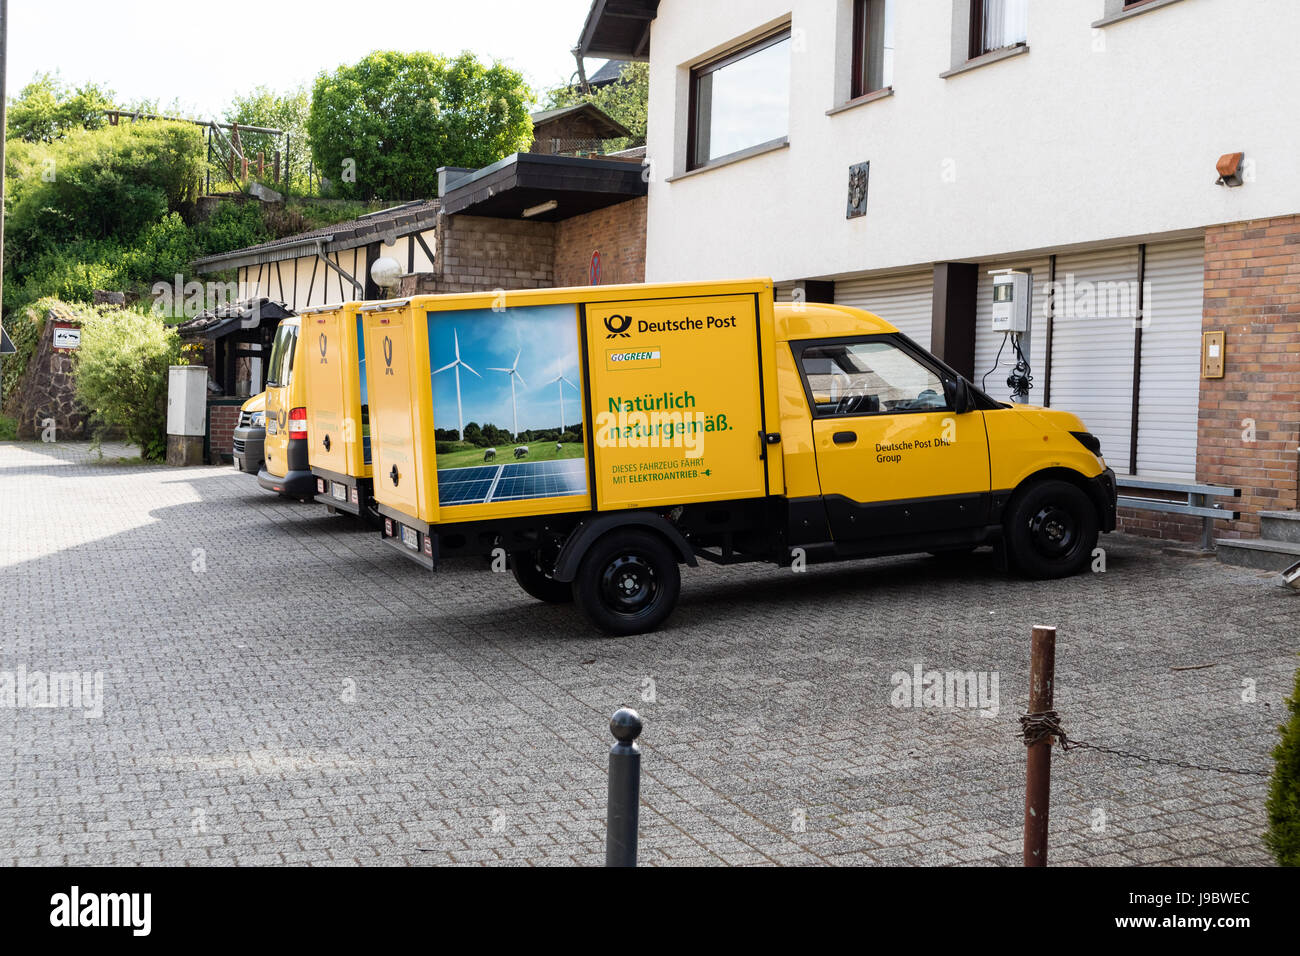 Deux treetscooter» - Voiture électrique avec boîte carrée de Deutsche Post DHL - Nettersheim, North Rhine Westphalia, NRW, Germany, Europe Banque D'Images